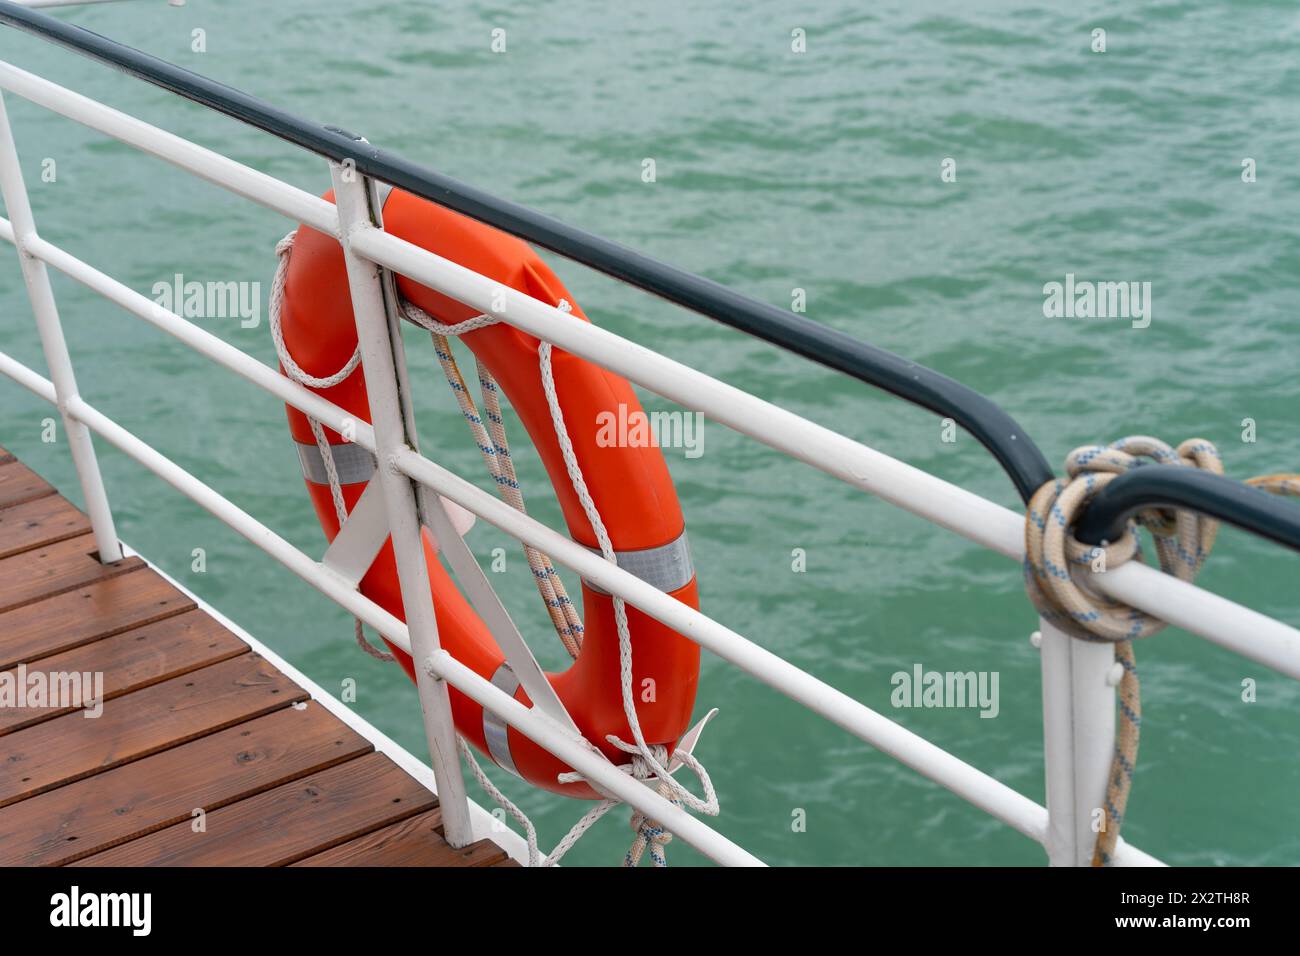 Un giubbotto salvagente arancione sulla ringhiera di una barca sull'acqua Foto Stock